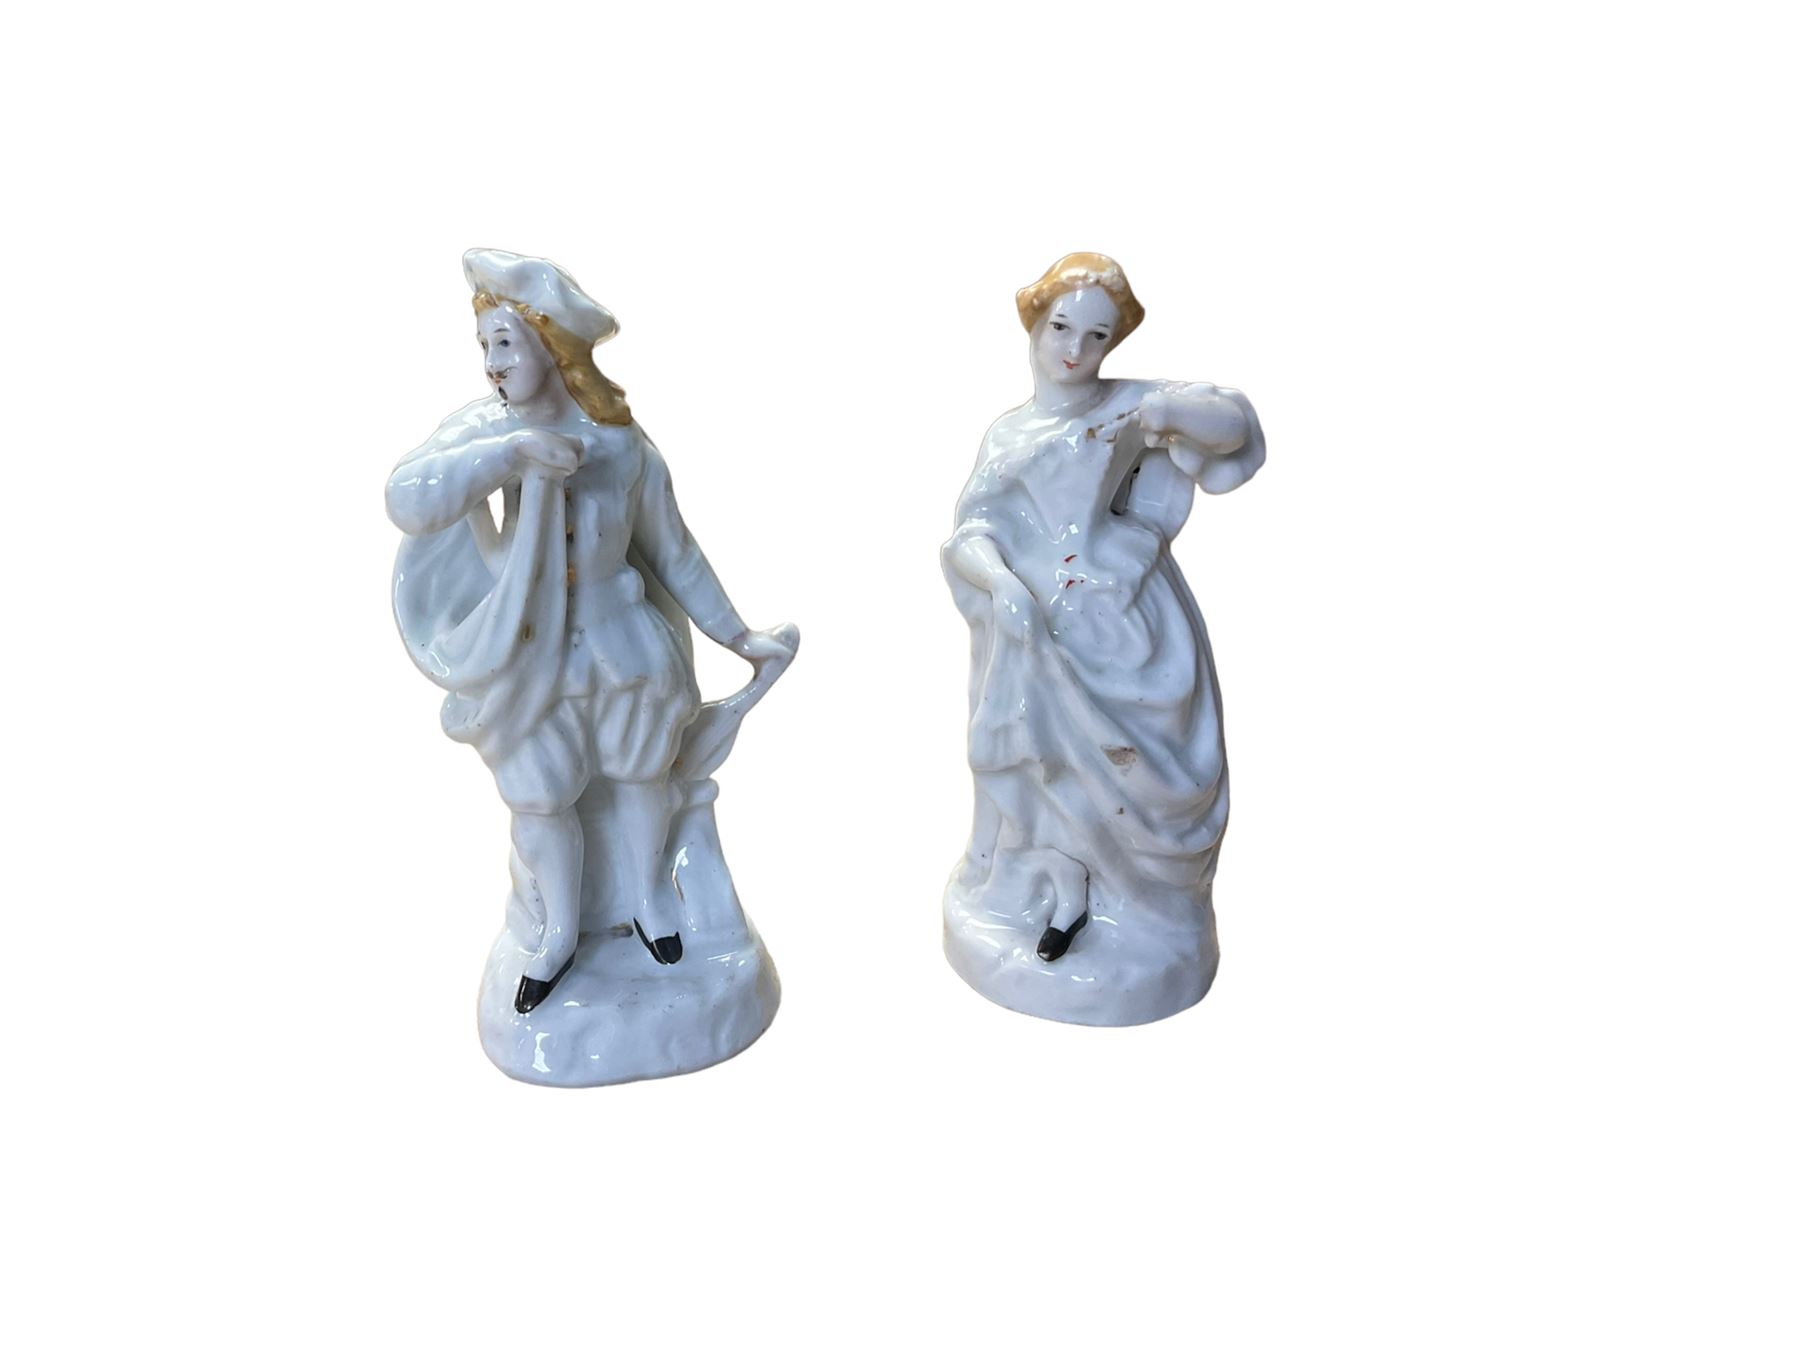 Pair of ceramic figures